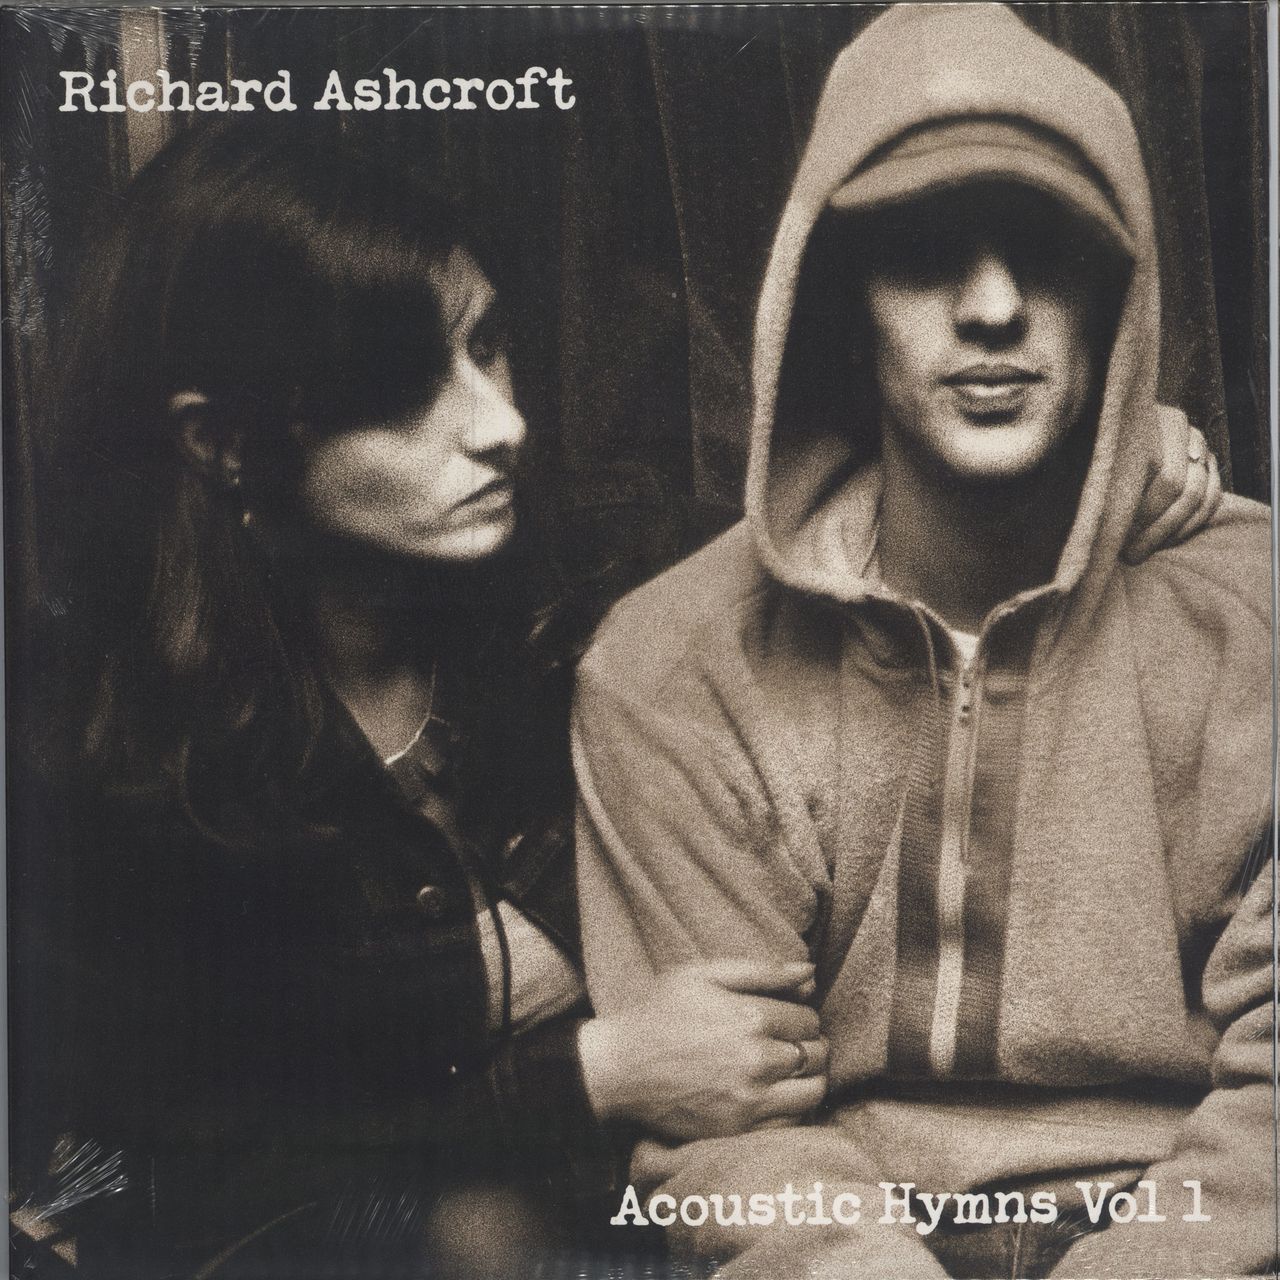 Richard Ashcroft Acoustic Hymns Vol 1 - Yellow Vinyl - Sealed + Autographed Print UK 2-LP vinyl record set (Double LP Album) INFECT648SLP